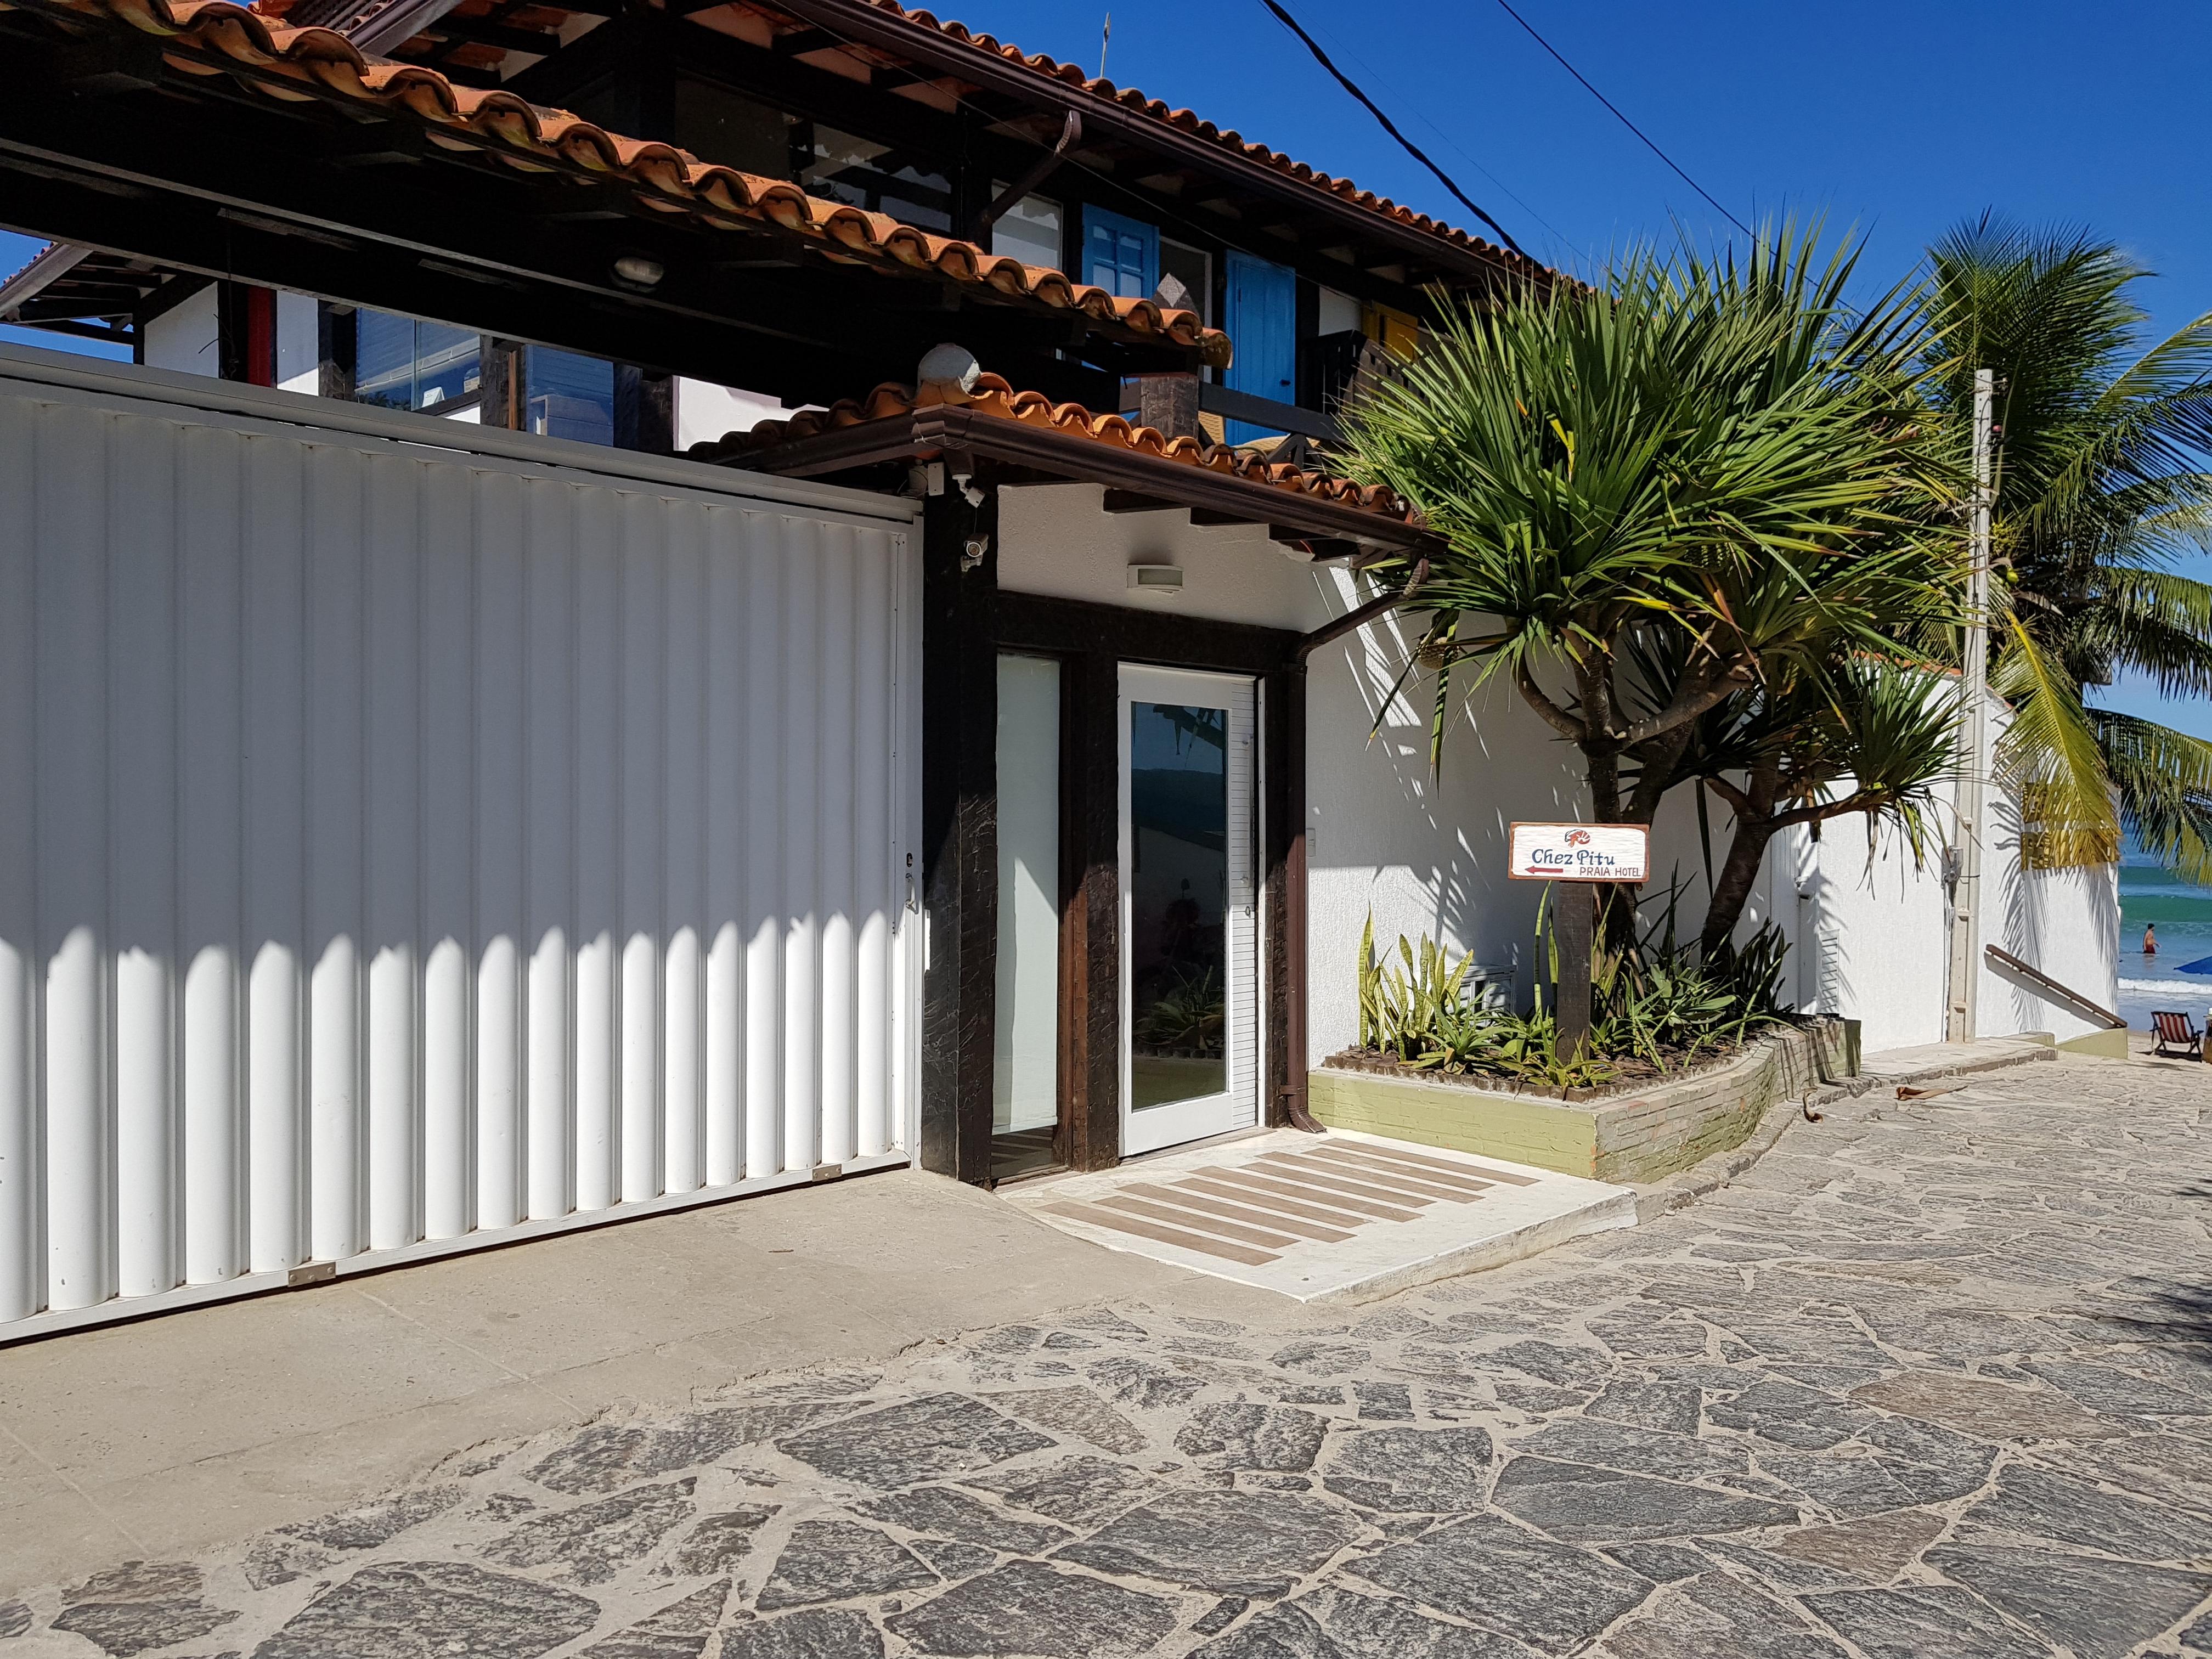 Chez Pitu Praia Hotel Búzios Exterior foto